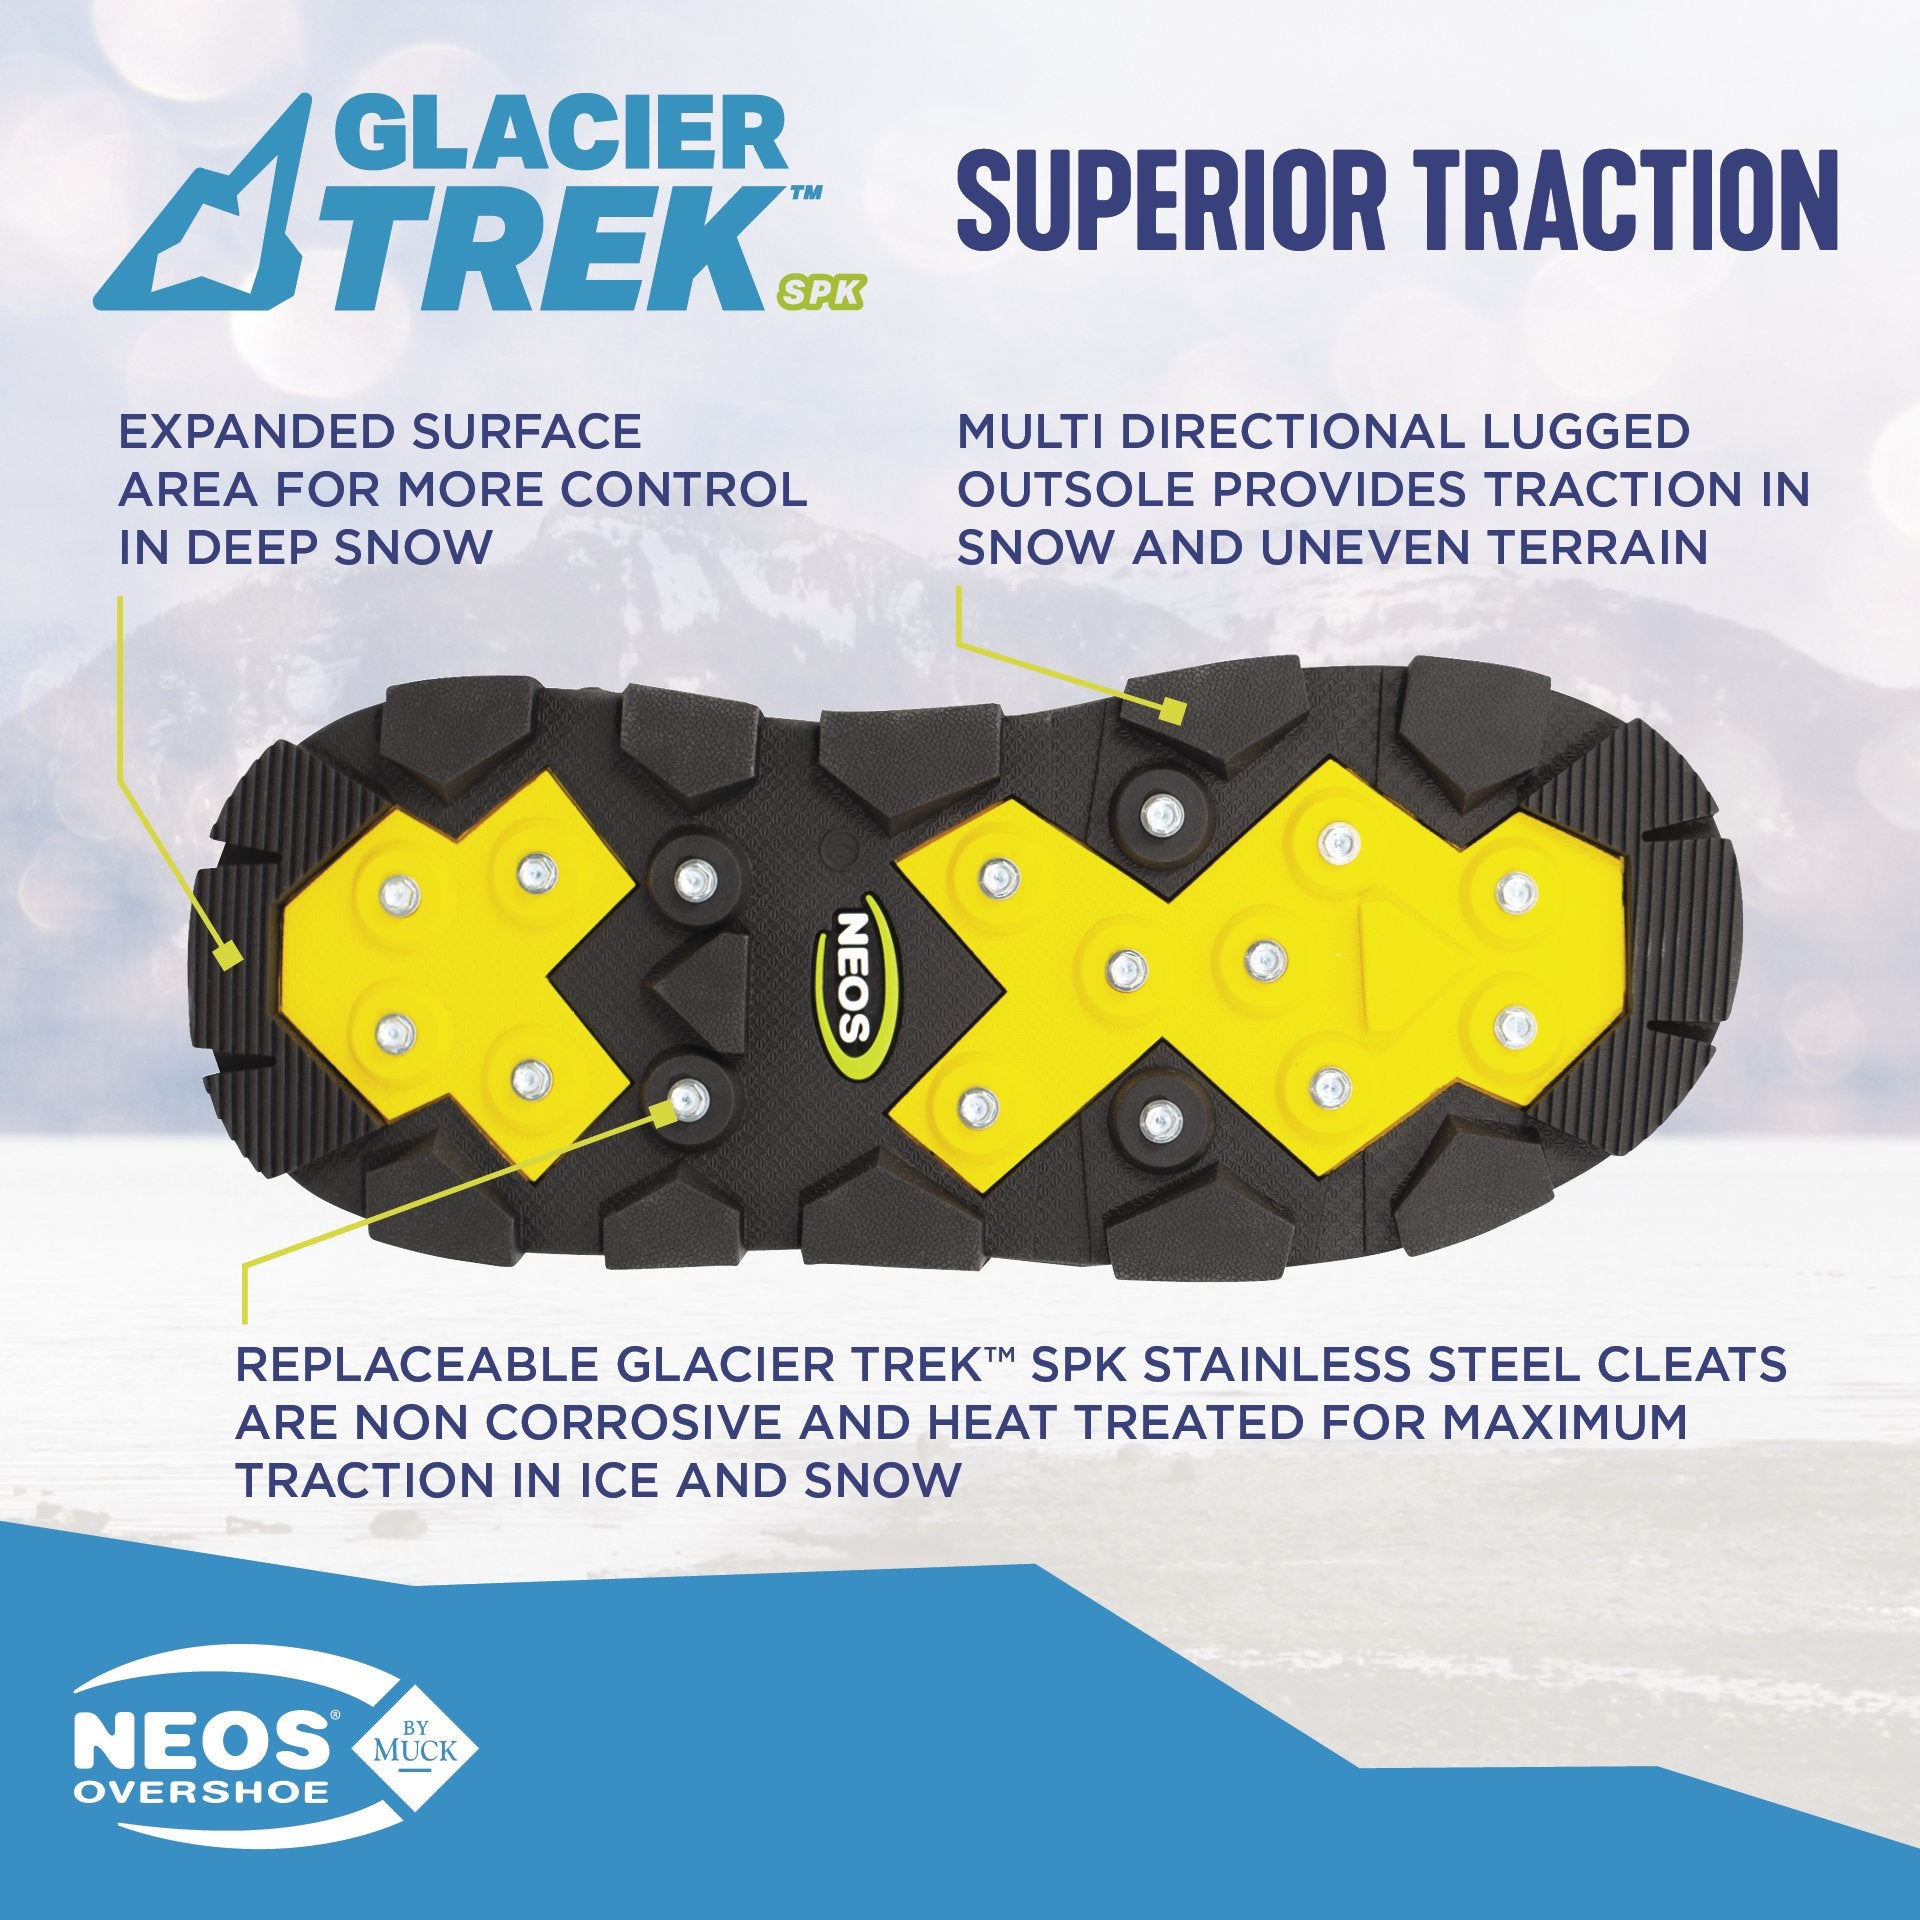 Voyager™ Glacier Trek Overshoes